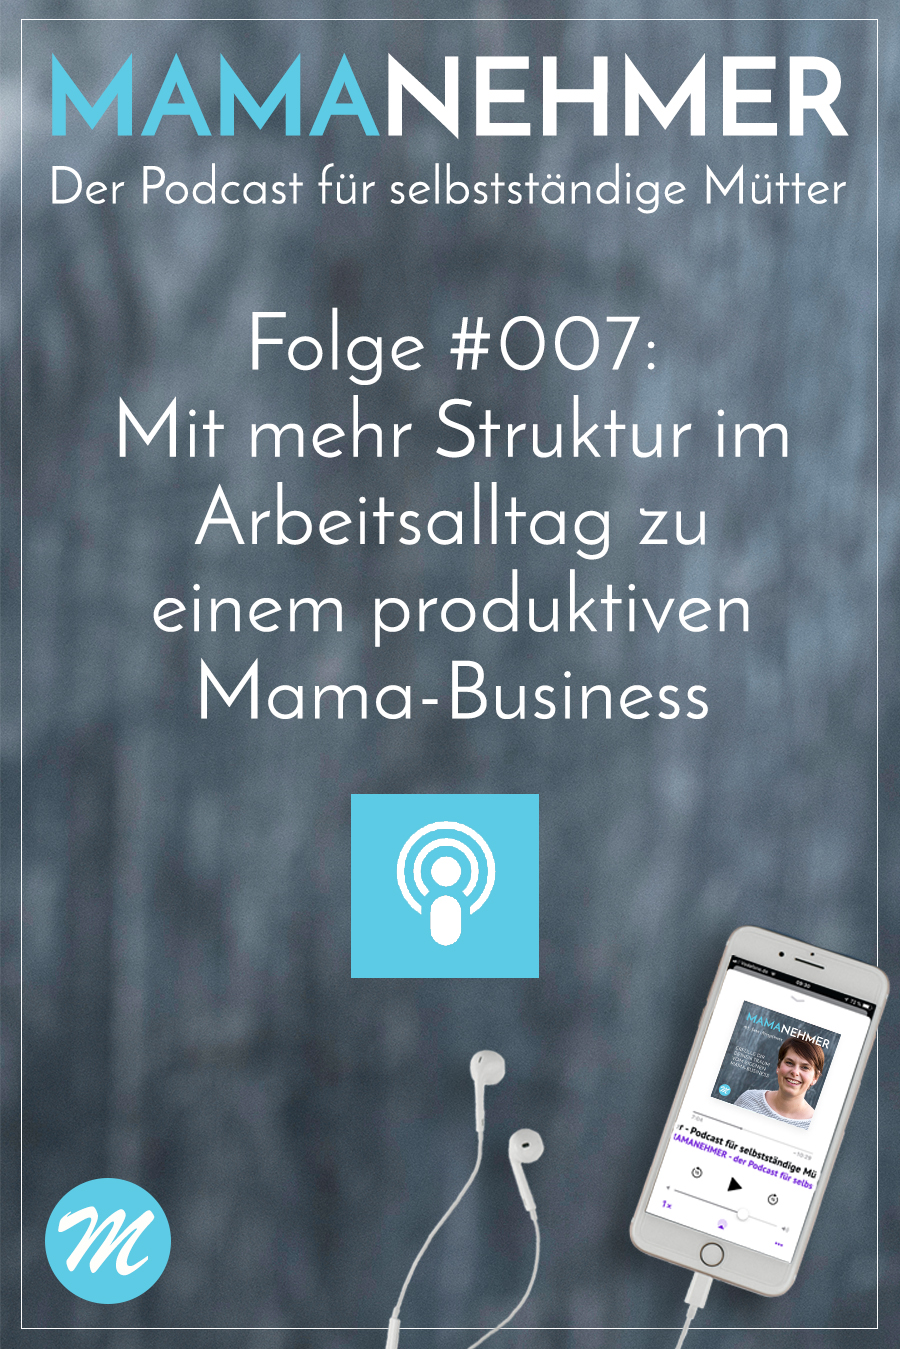 Mehr Produktivität als Mompreneur durch mehr Struktur im Mama-Business-Alltag. Ich zeige dir in dieser Podcast-Episode, wie dir das ganz leicht gelingt! #MompreneurDe #Mamanehmer #Struktur #MamaBusiness #Produktivität